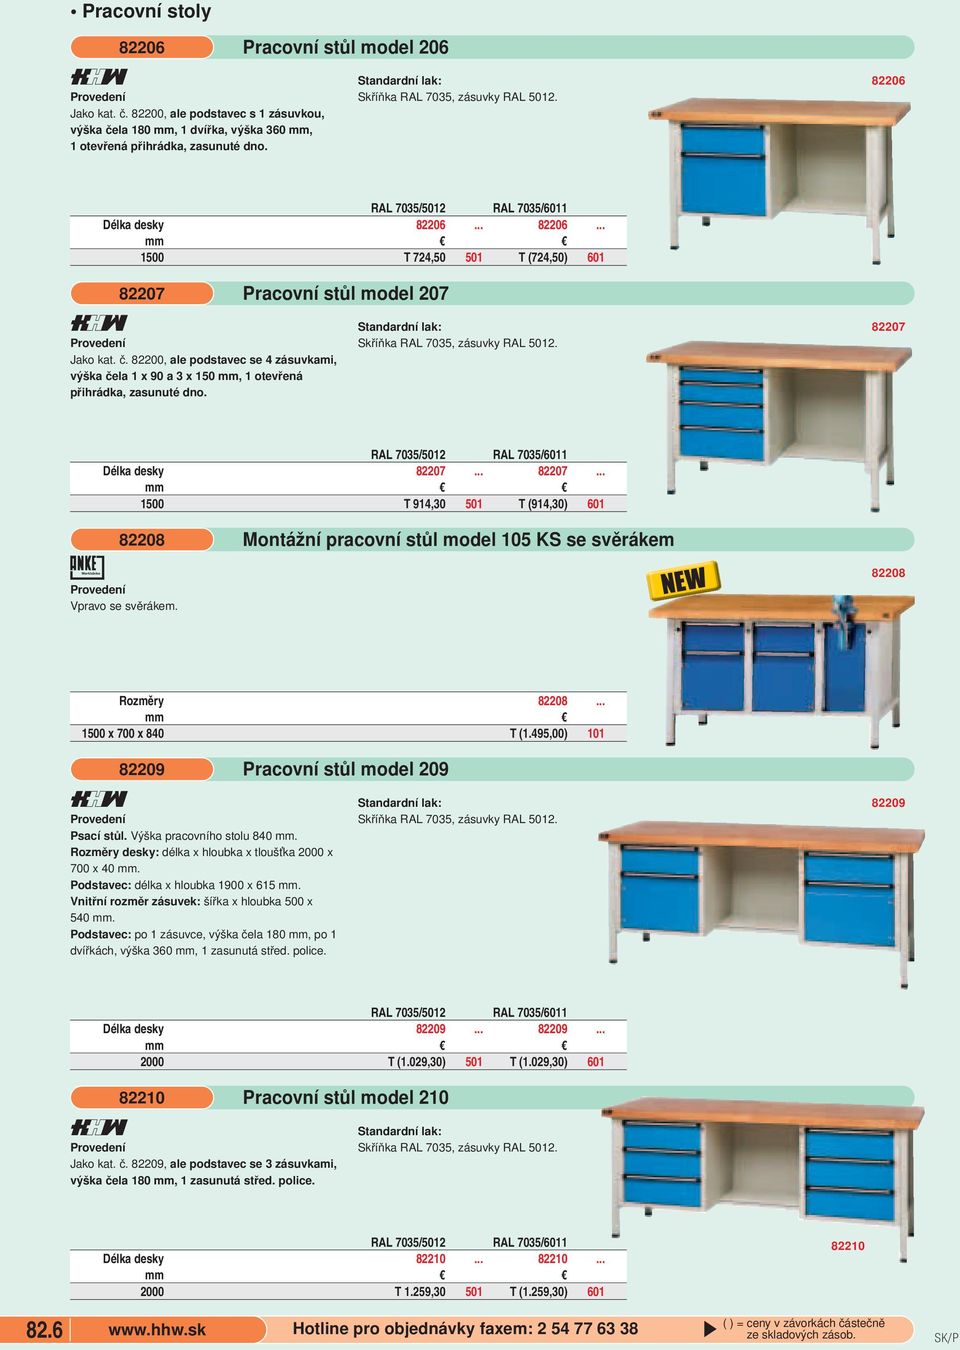 dno Pracovní stůl model 207 Skříňka RAL 7035, zásuvky RAL 502 82207 RAL 7035/502 RAL 7035/60 Délka desky 82207 82207 500 T 94,30 50 T (94,30) 60 82208 Vpravo se svěrákem Montážní pracovní stůl model